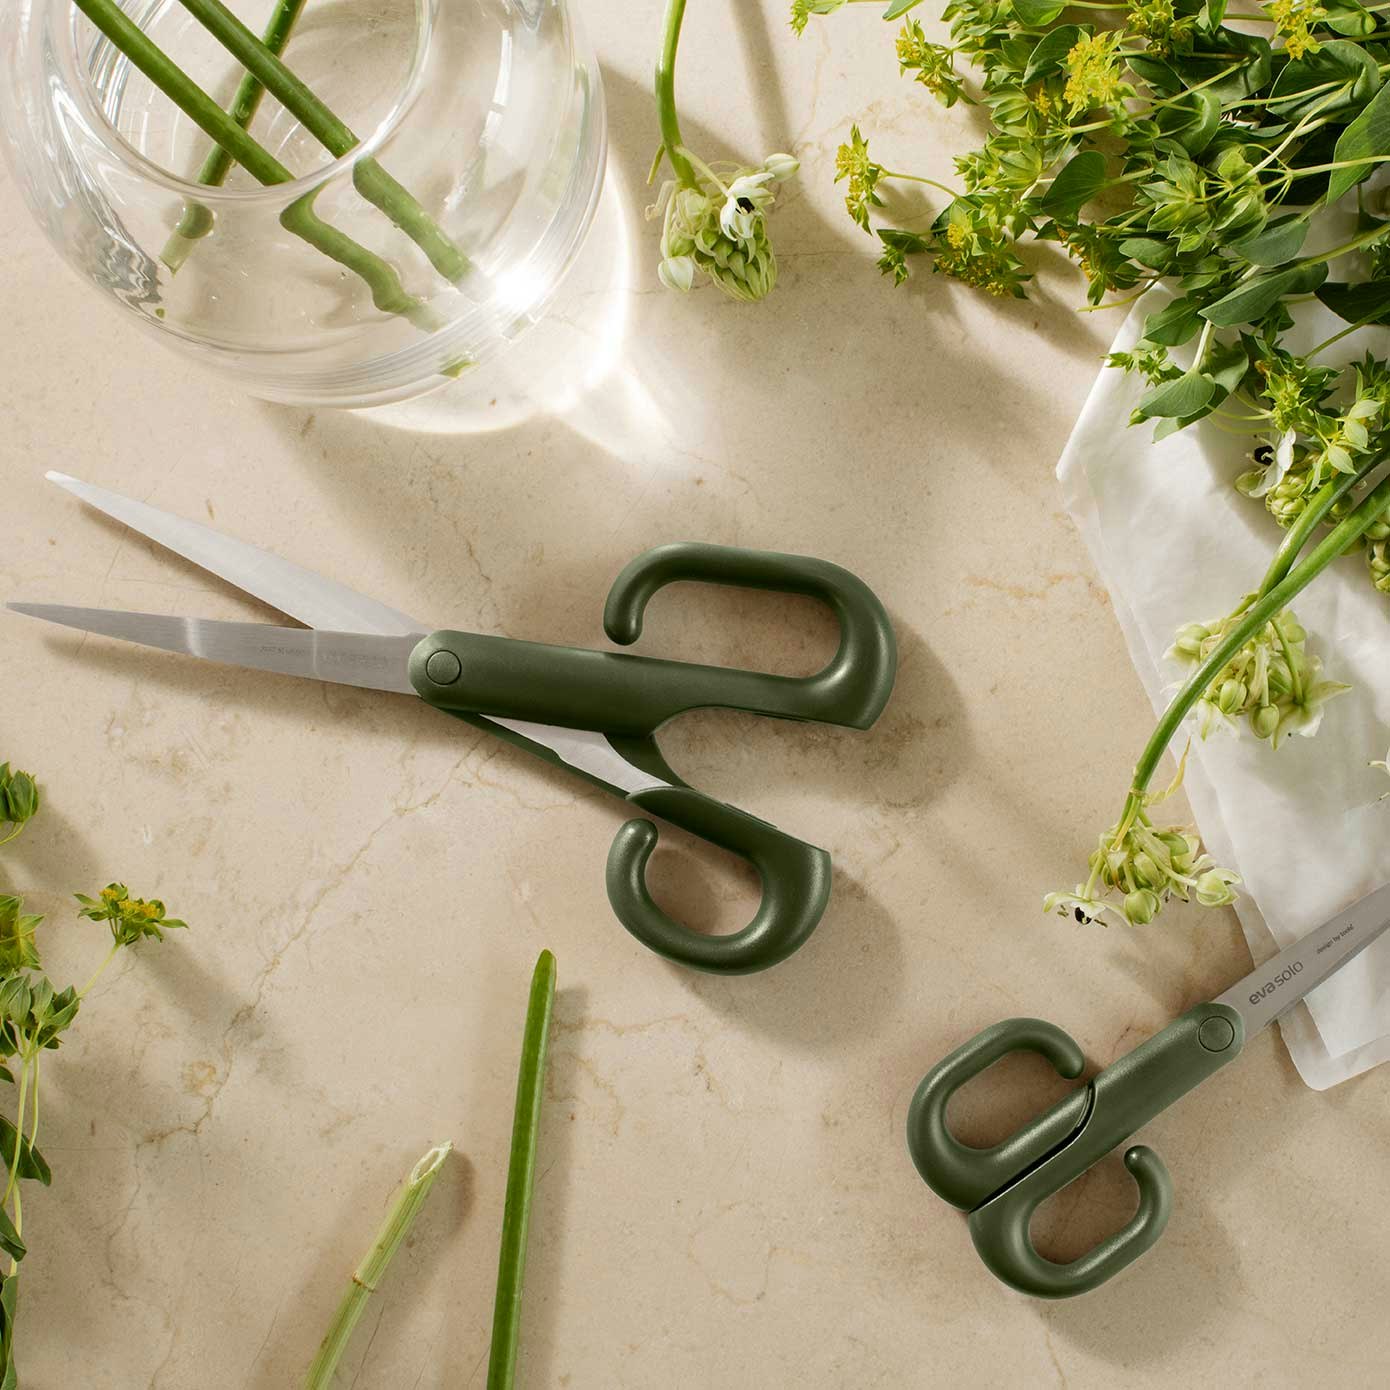 https://royaldesign.com/image/2/eva-solo-green-tools-scissor-24-cm-0